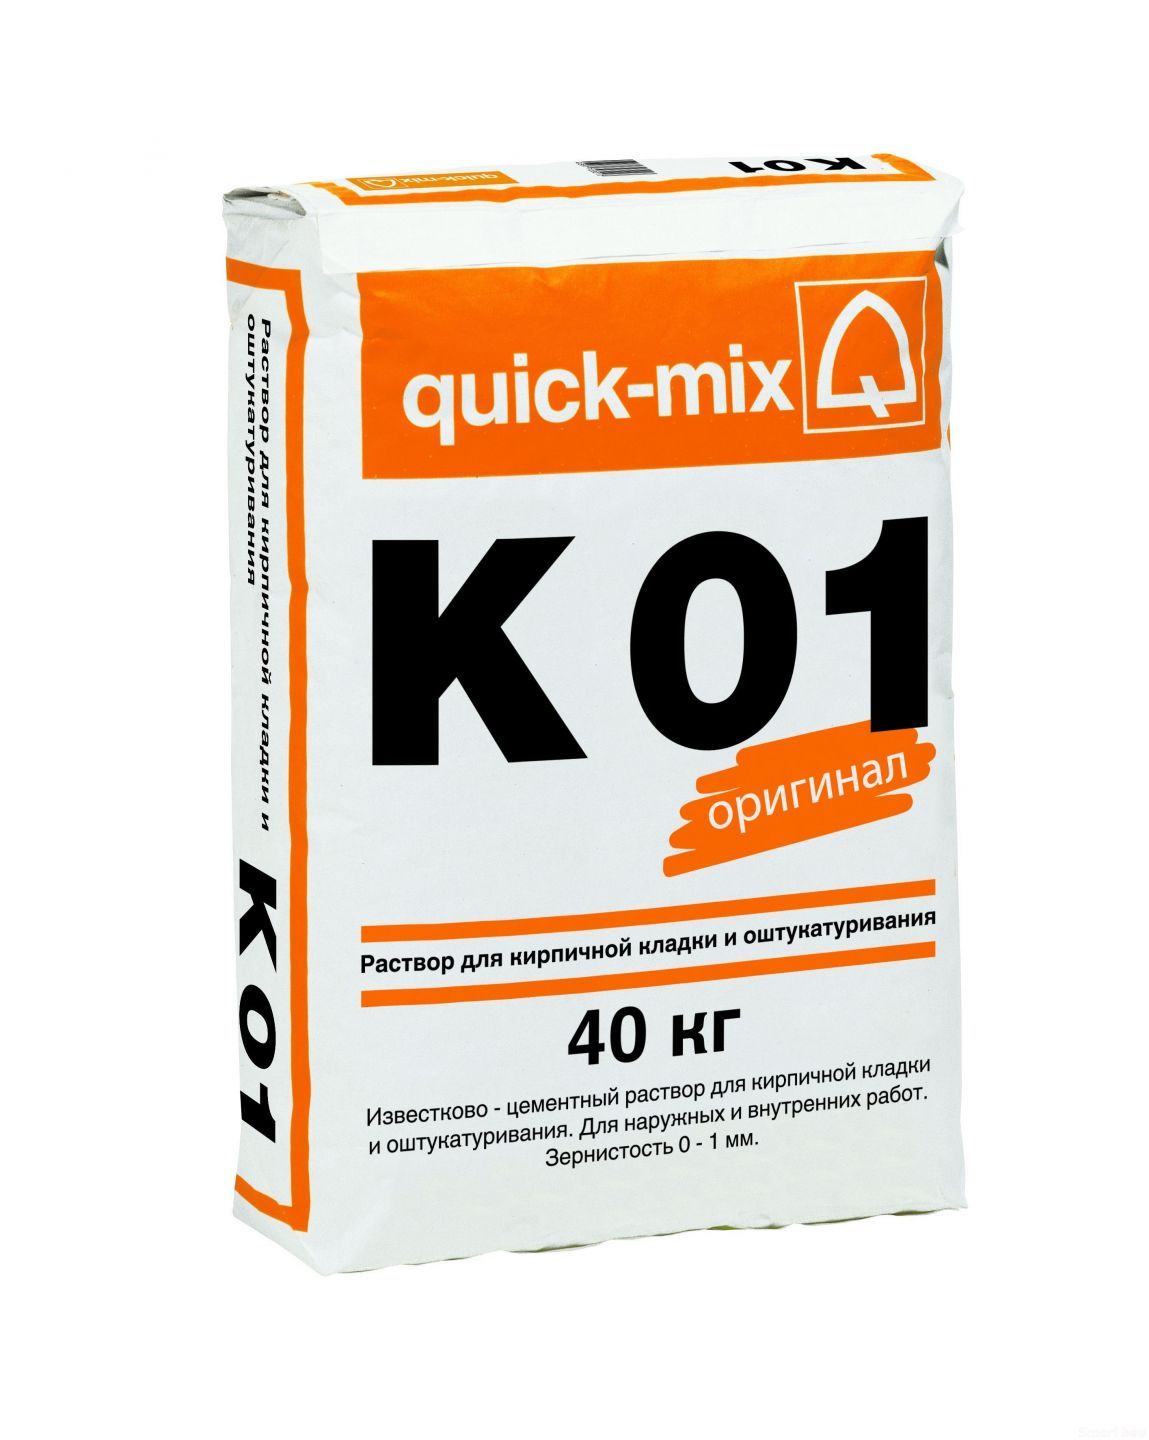 Известково-цементный раствор quick-mix K 01 фото